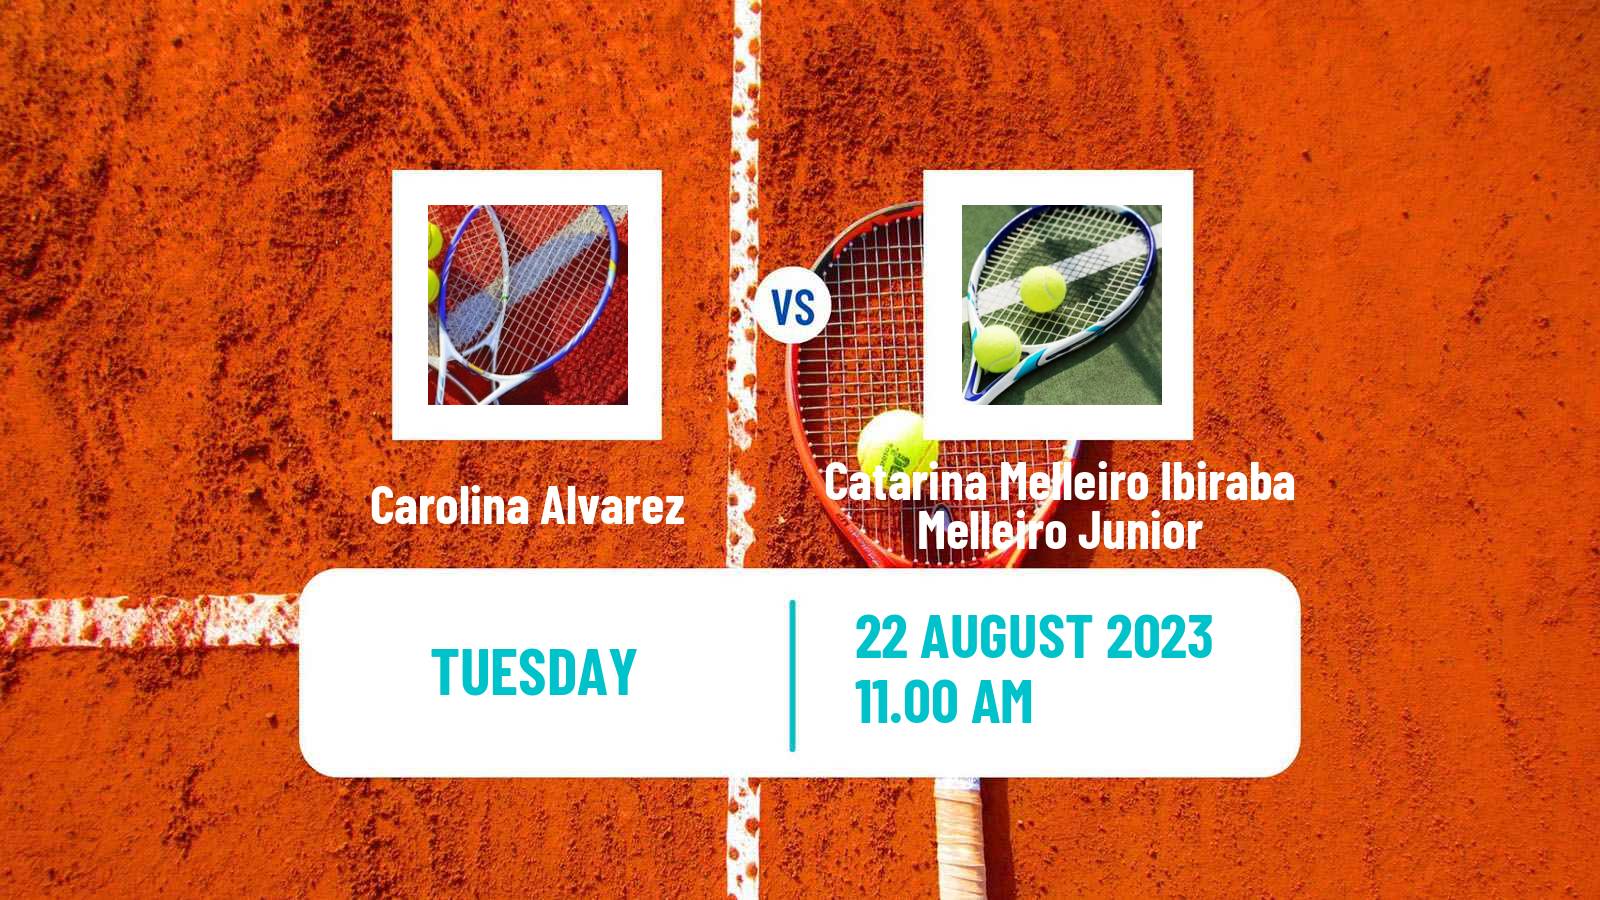 Tennis ITF W15 Lima Women Carolina Alvarez - Catarina Melleiro Ibiraba Melleiro Junior